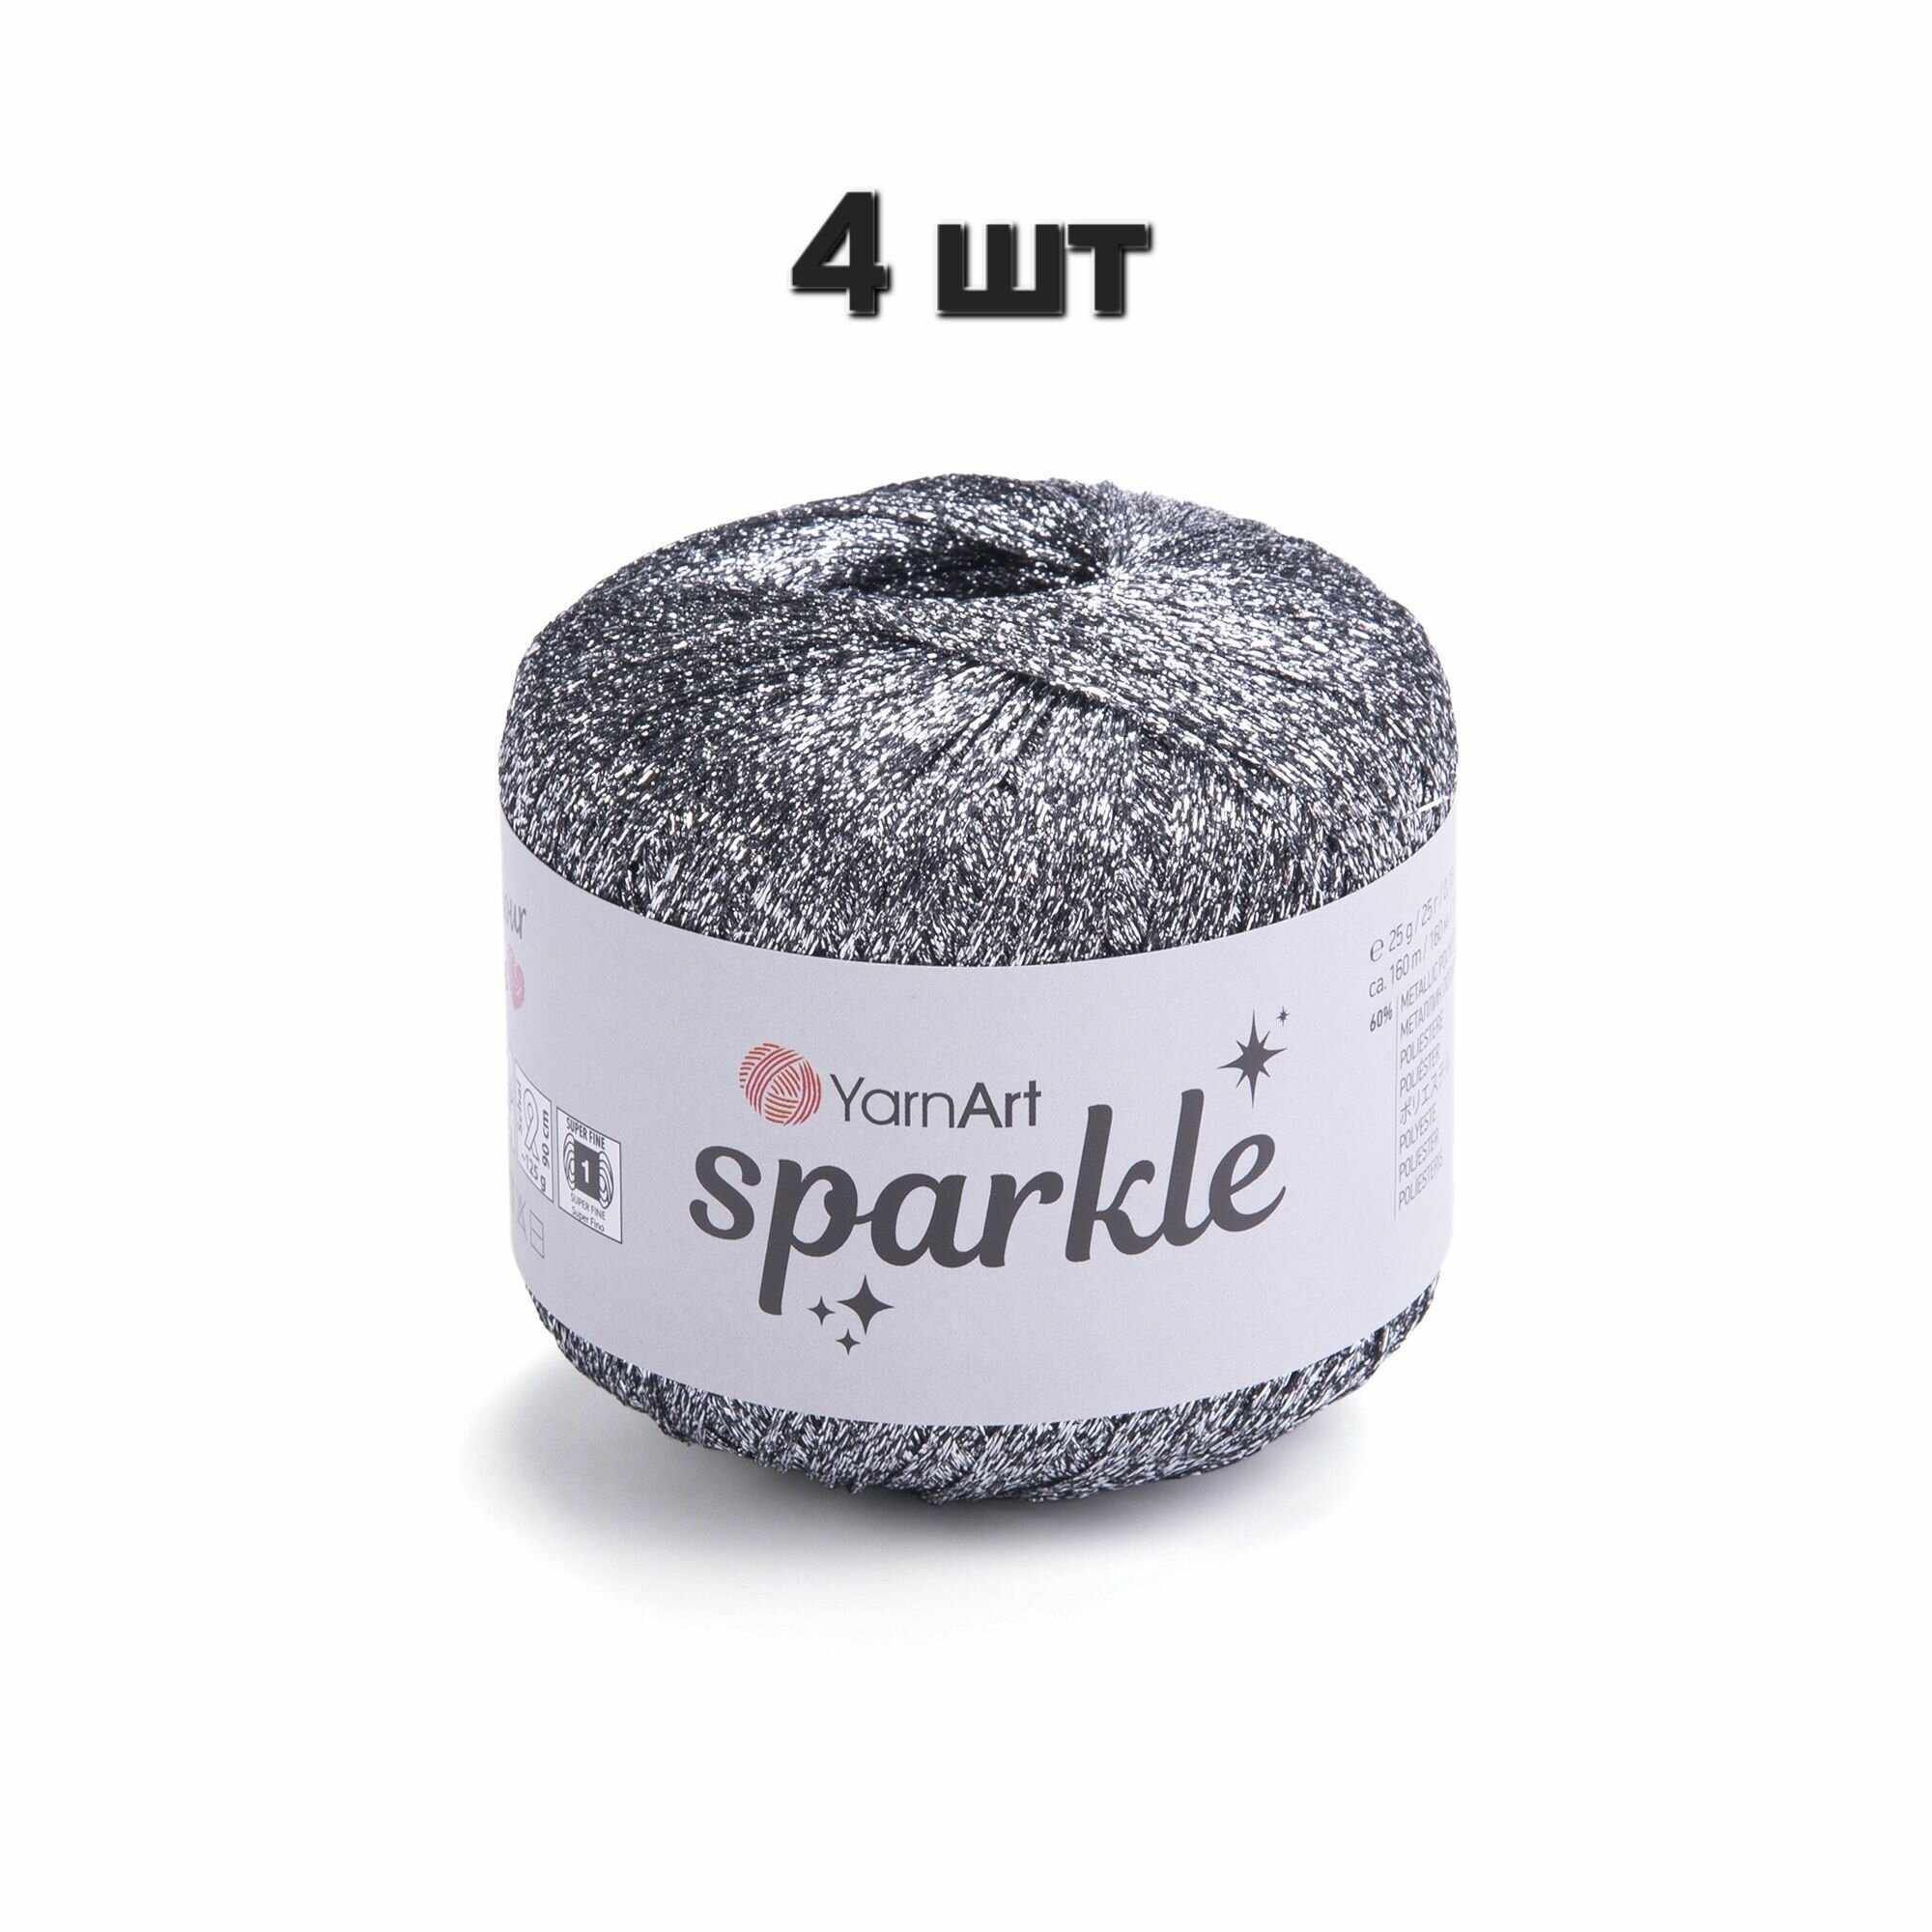 Пряжа YarnArt Sparkle Темное серебро (1303) 4 мотка 25 г/160 м (60% металлик, 40% полиамид) ярнарт спаркл